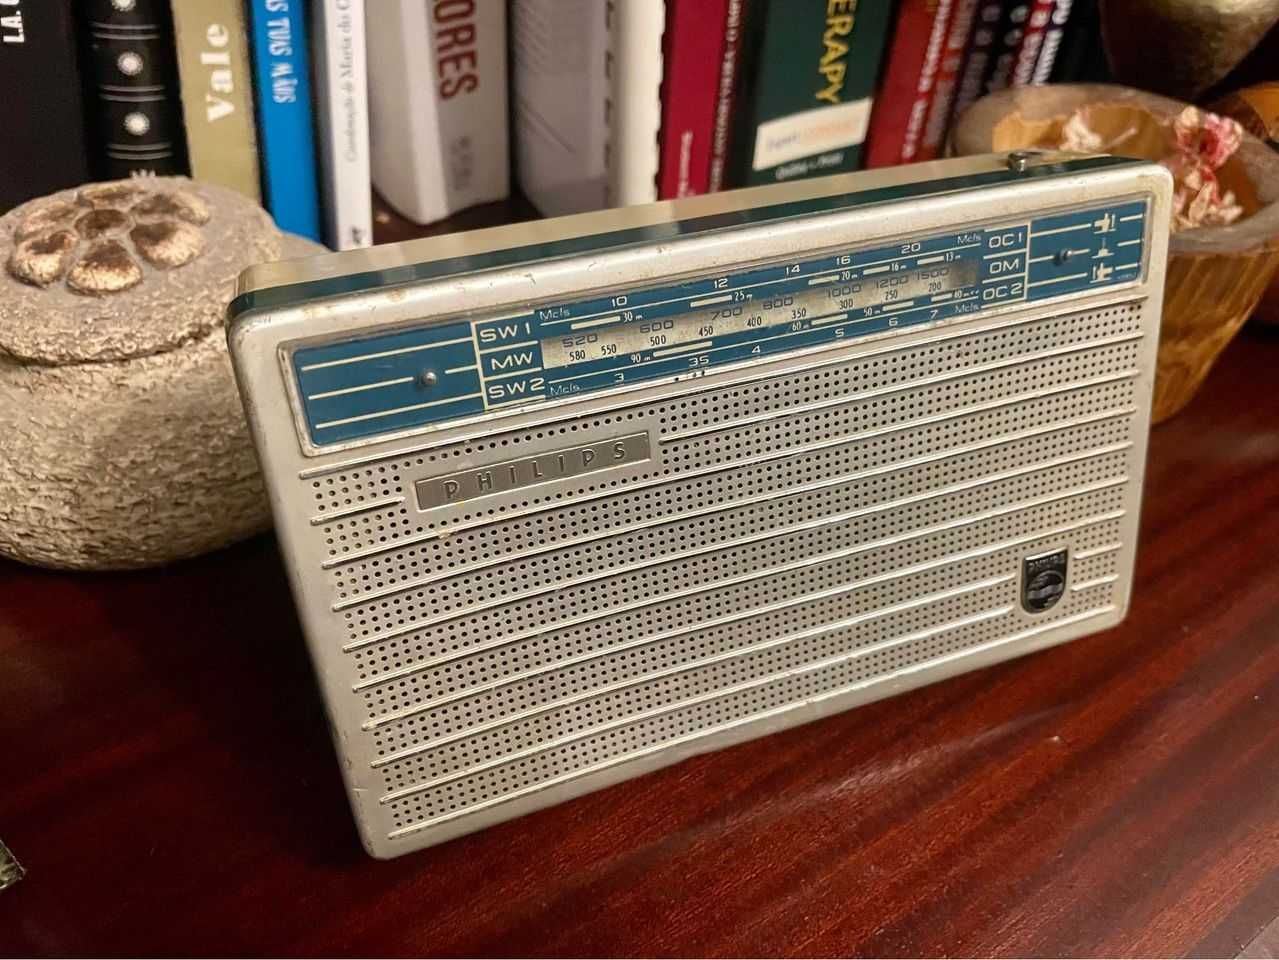 Rádios telefonias do Séc 20, antigos e vintage